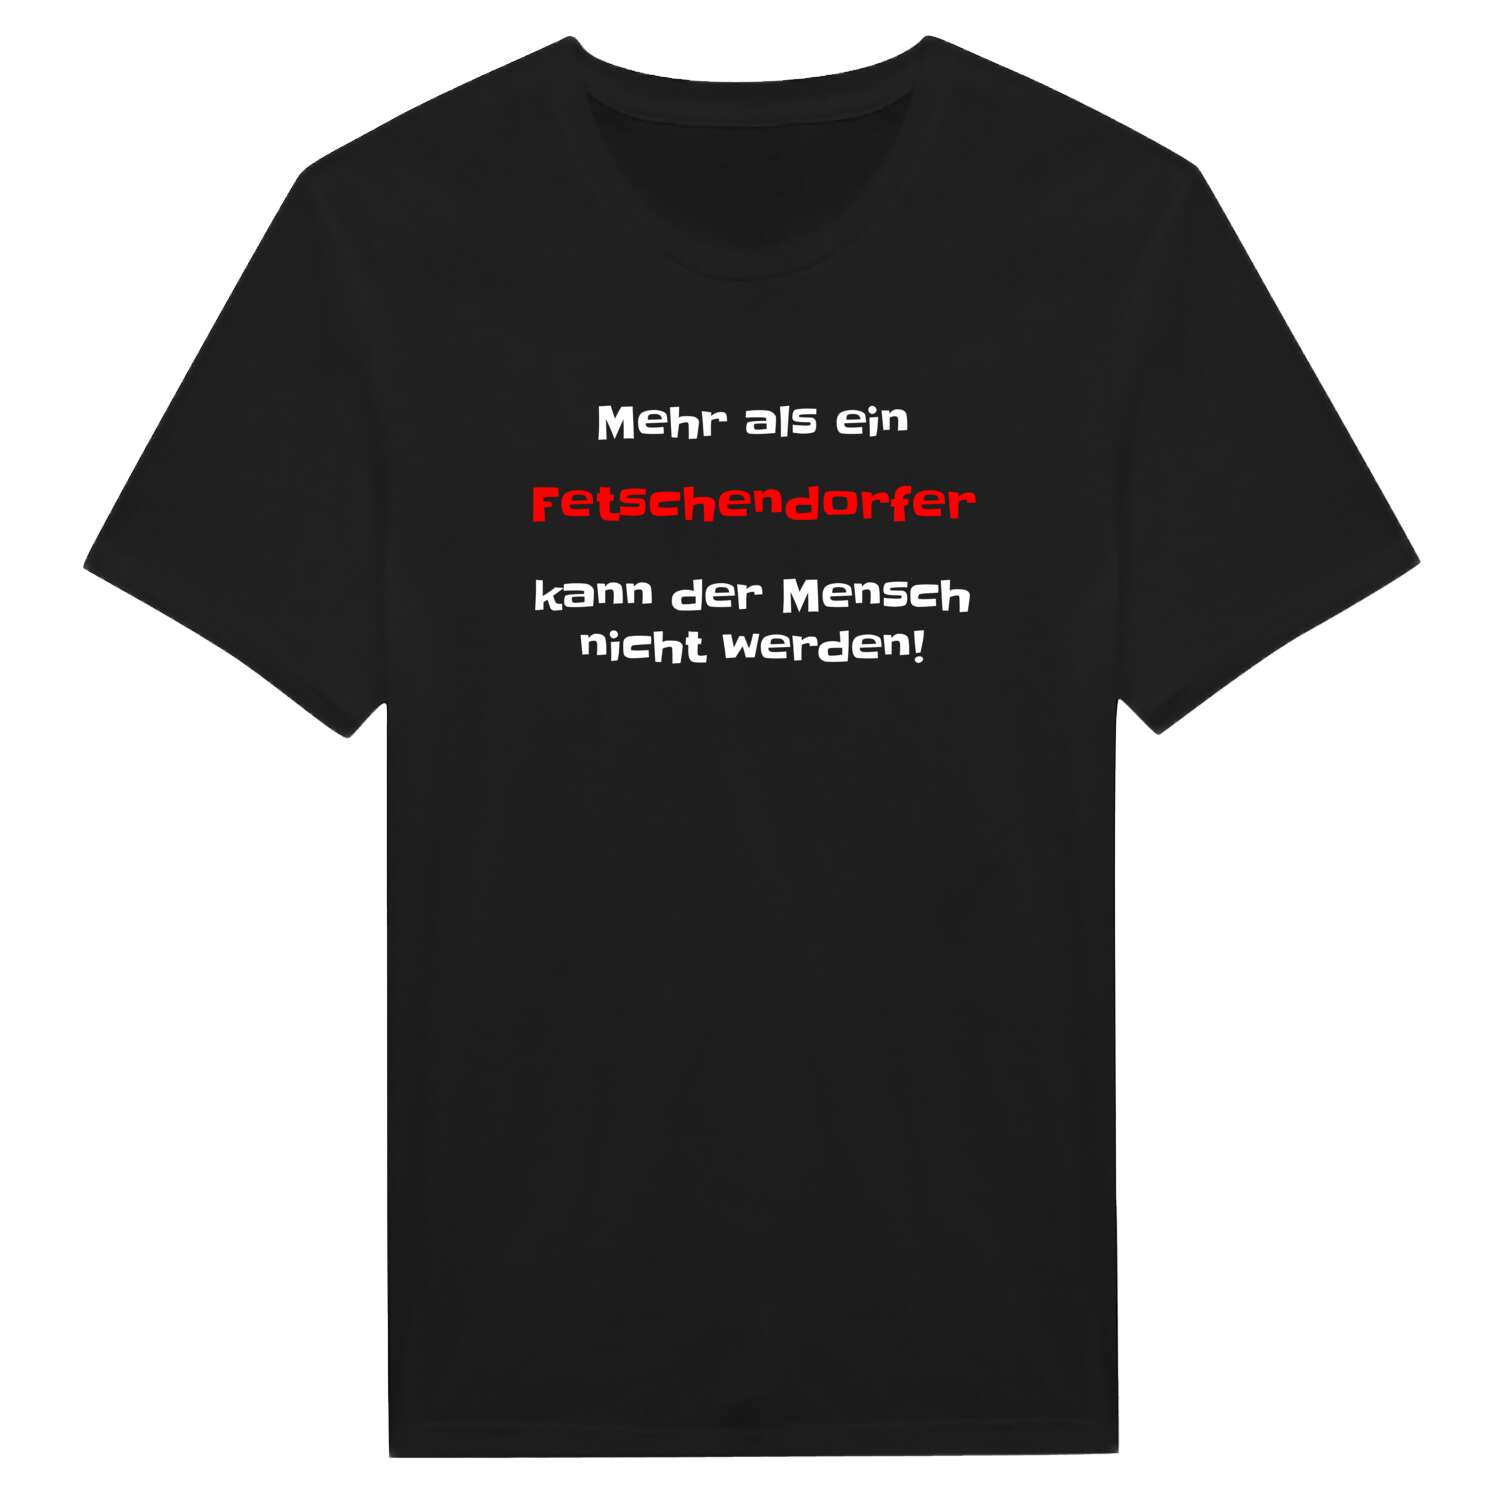 Fetschendorf T-Shirt »Mehr als ein«